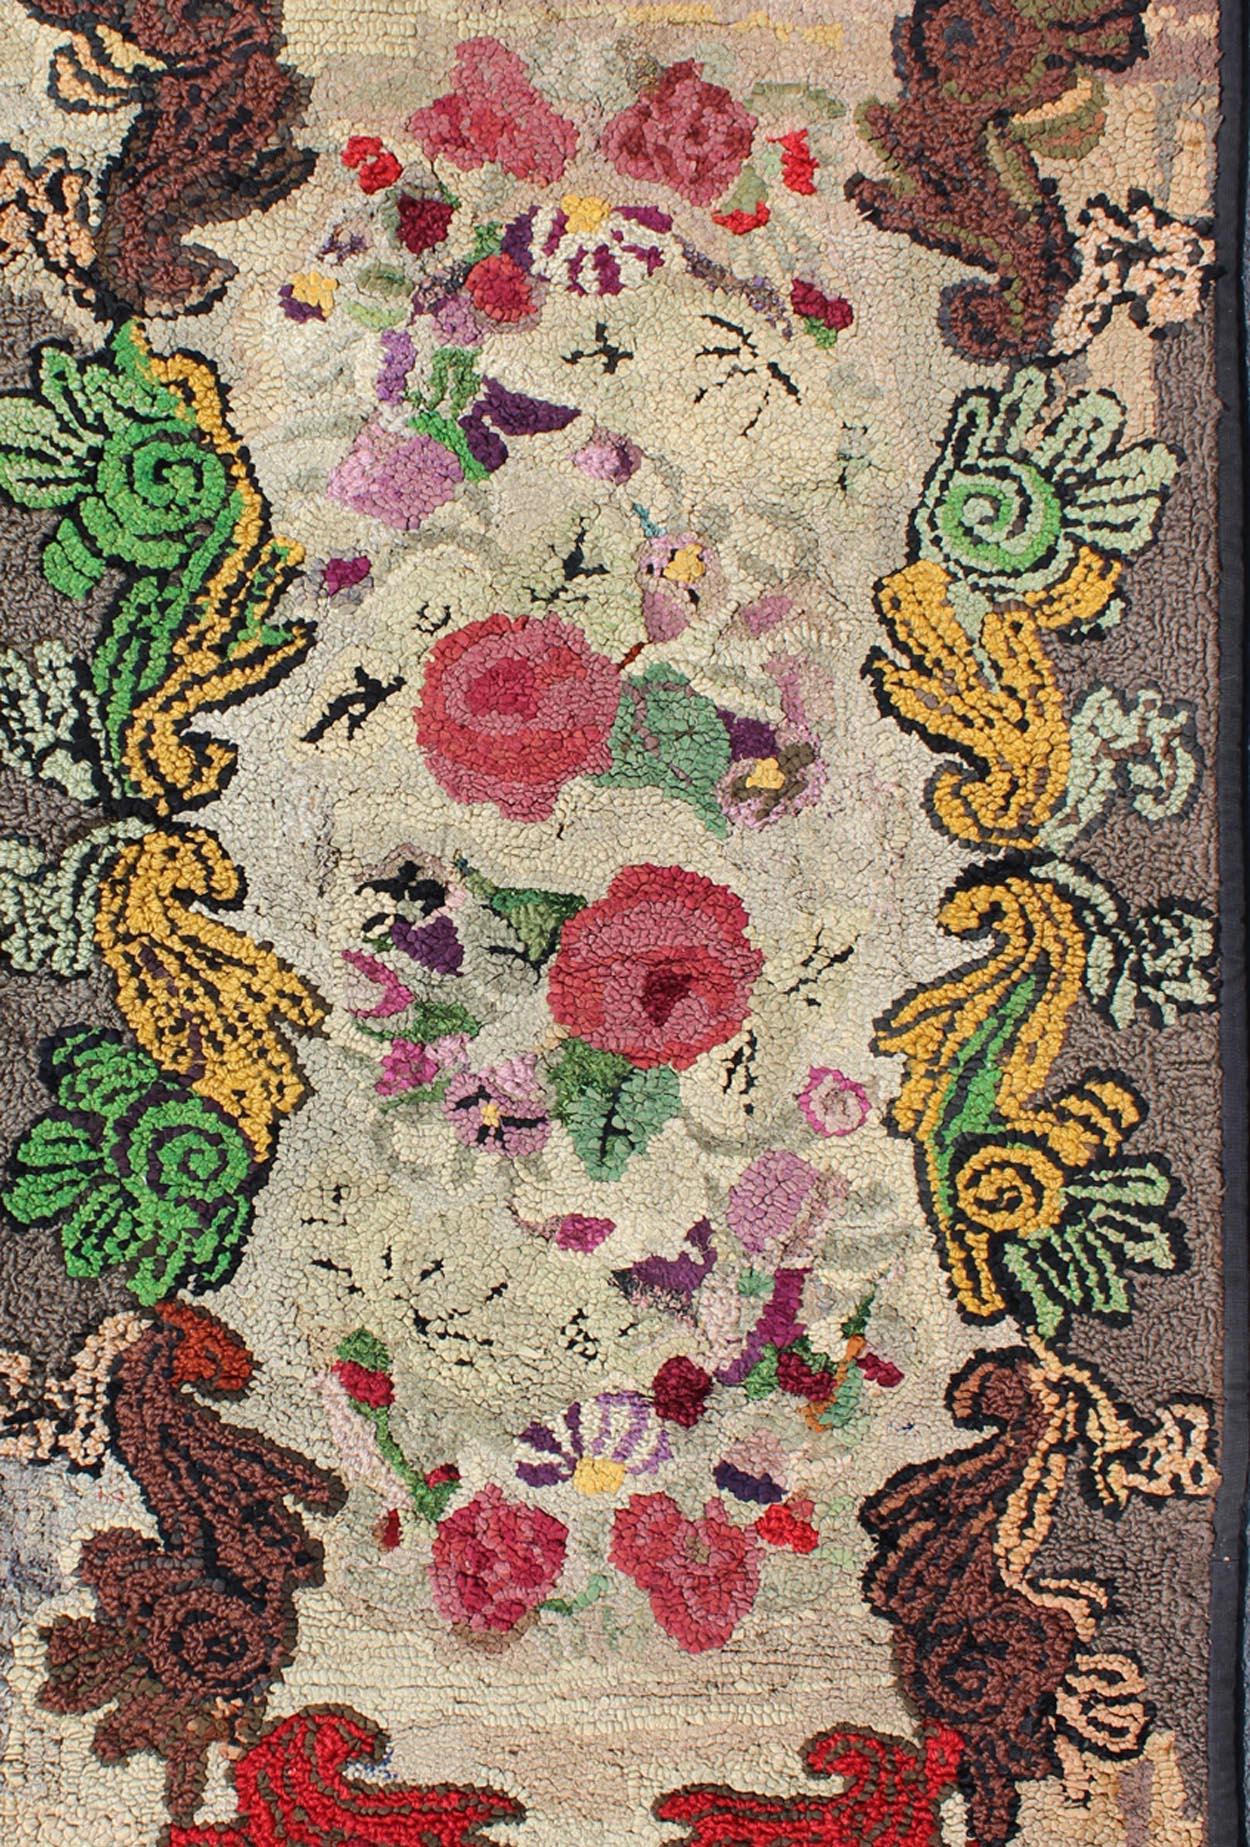 Farbenfroher und prächtiger amerikanischer Hakenteppich mit roten, rosa, grünen, braunen, grauen und gelben Blumenbouquets, Teppich G-0305, Herkunftsland / Typ: Vereinigte Staaten / Häkelteppich, um 1910.

Dieser antike amerikanische Hakenteppich